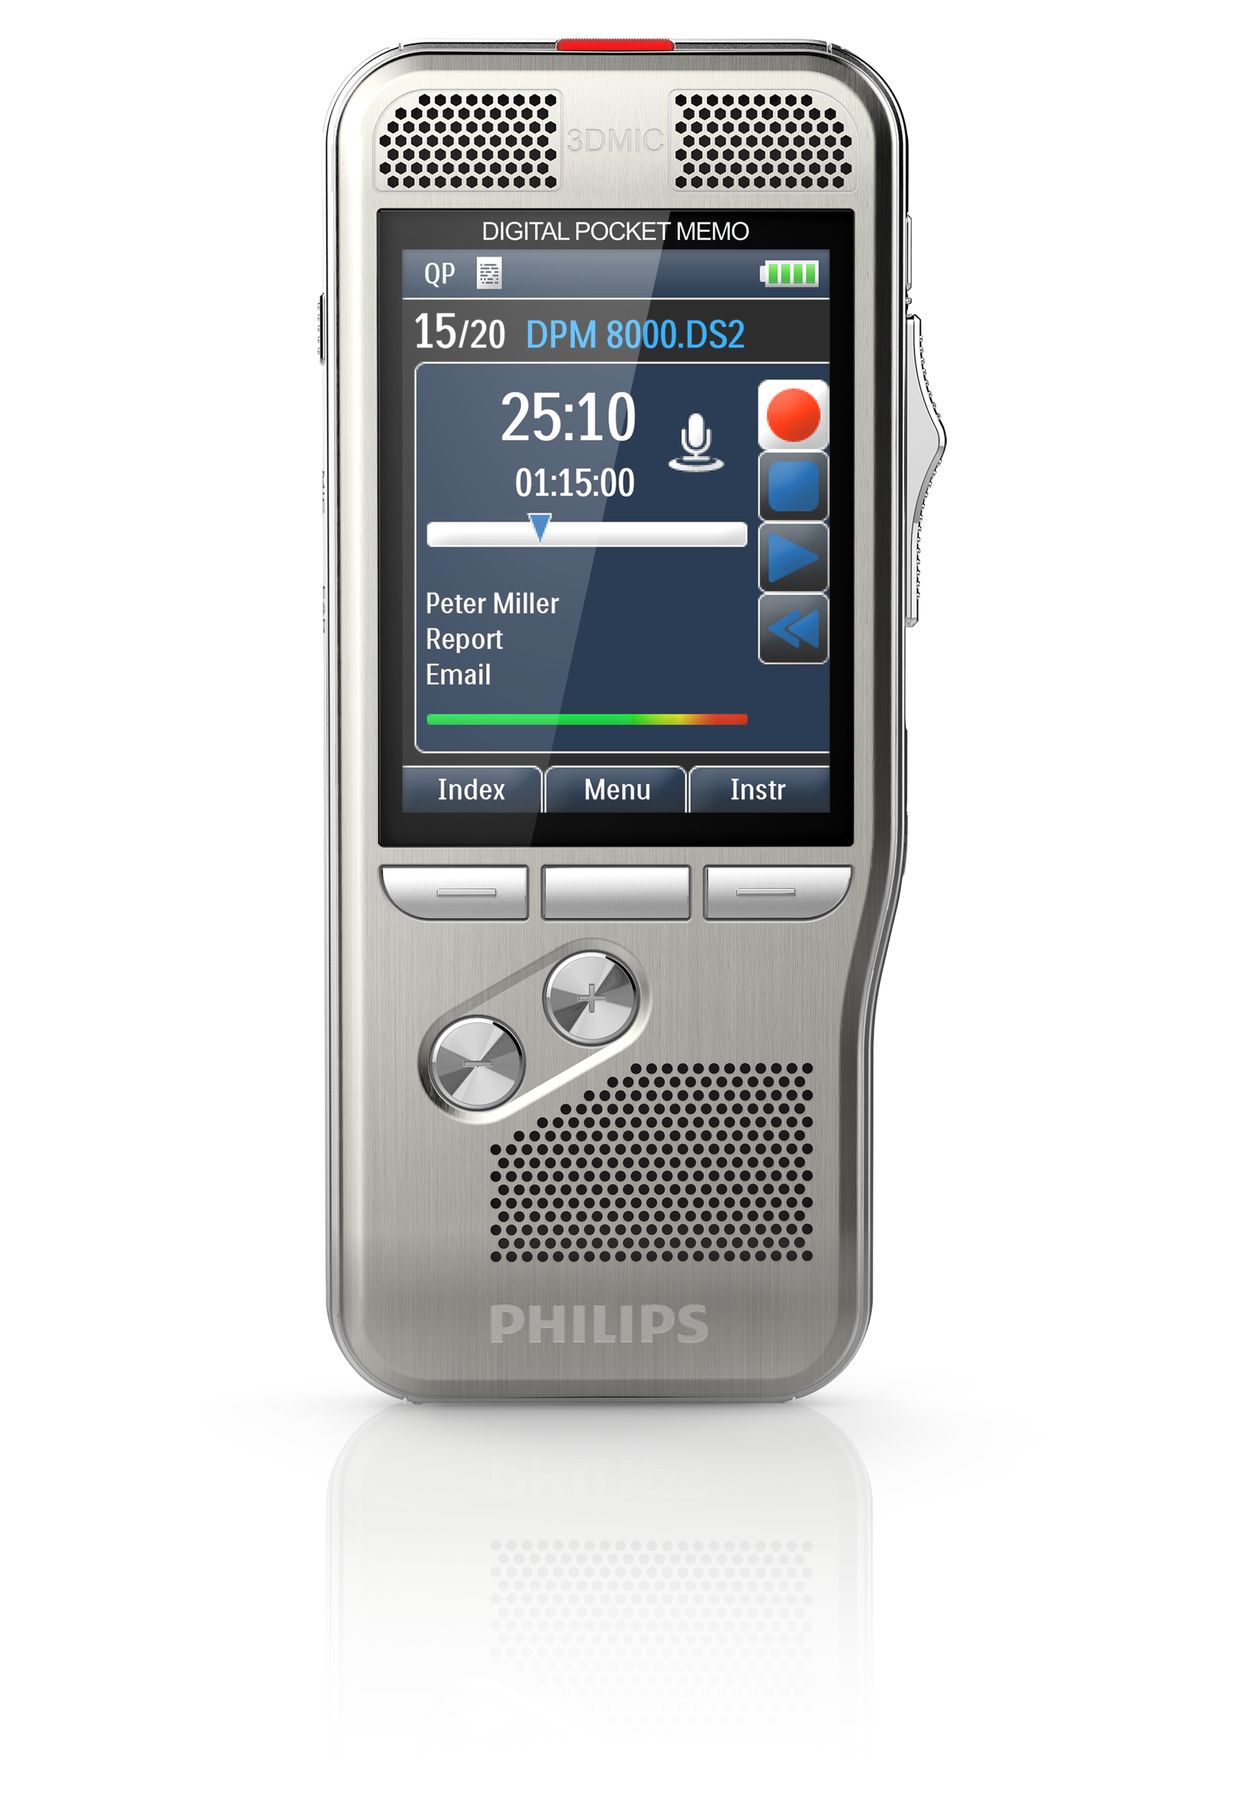 Pocket Memo Digitales Diktiergerat Dpm8000 00 Philips